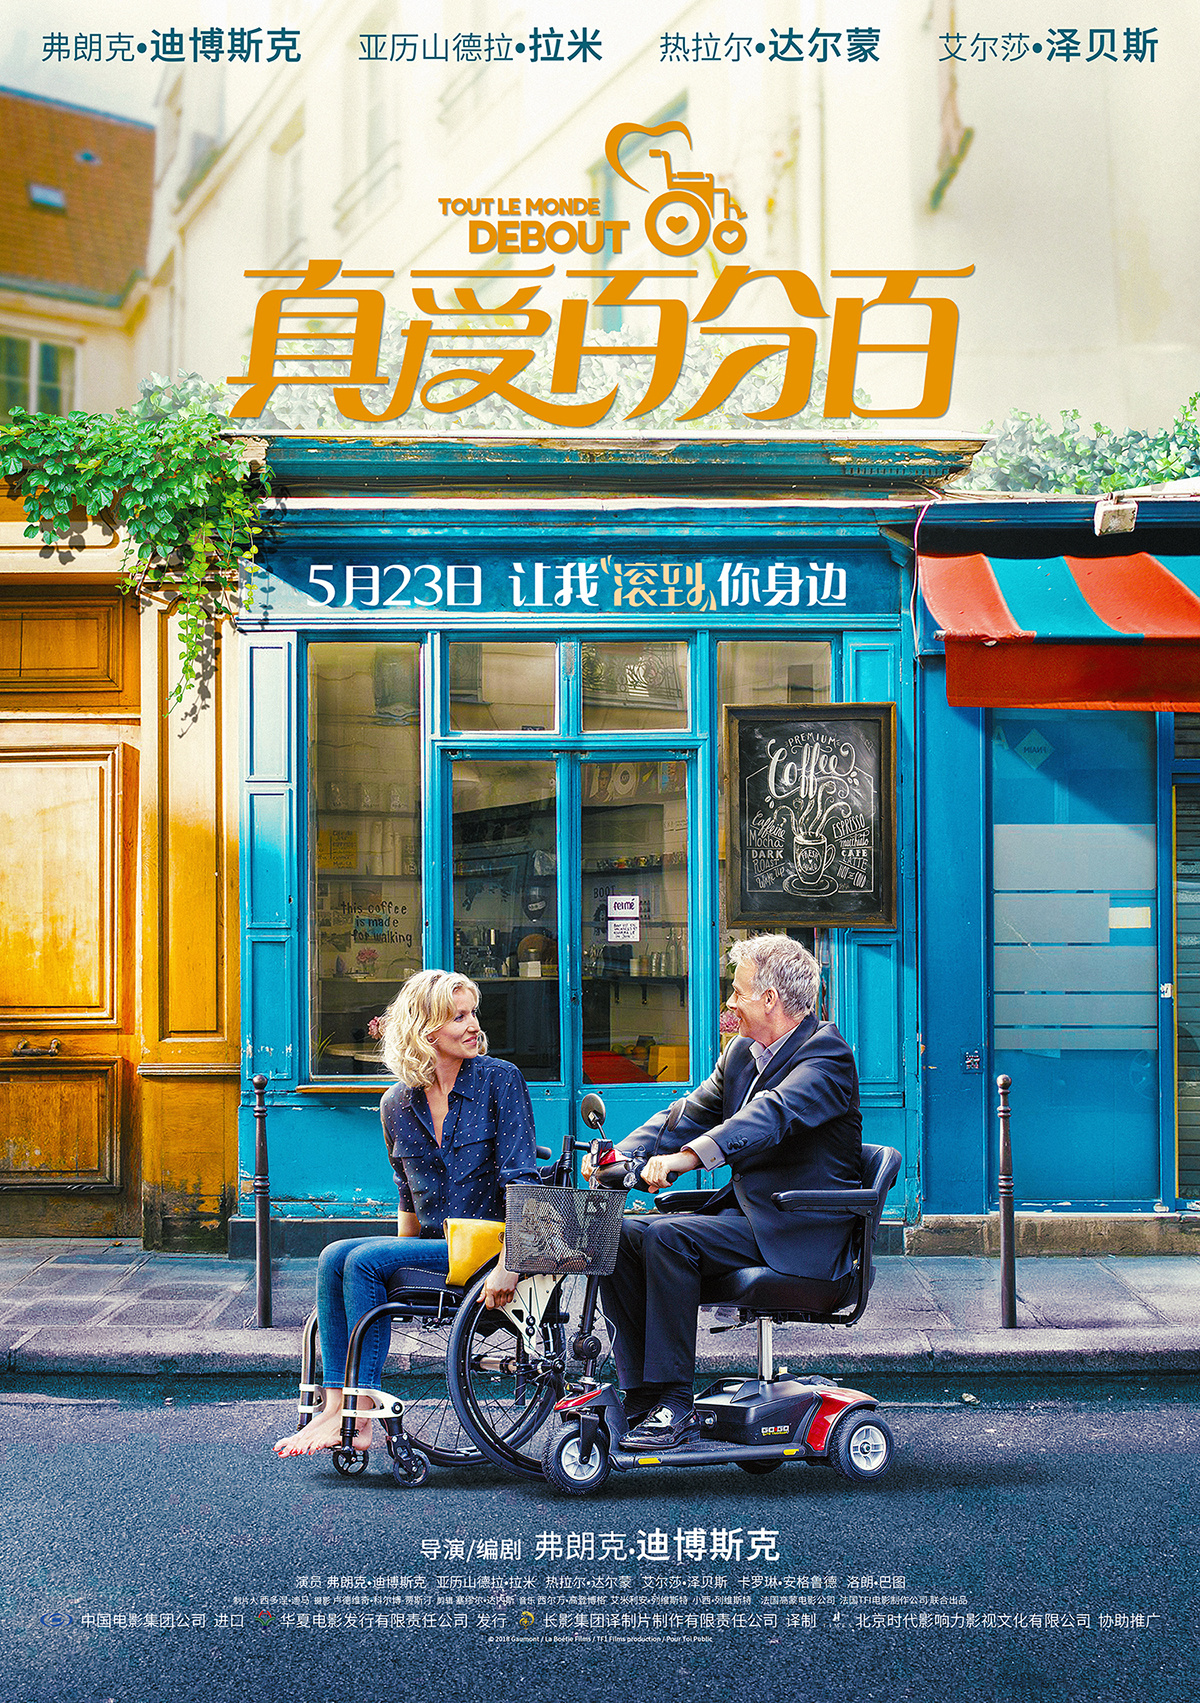 《真爱百分百》发布海报 男女主角坐轮椅漫步街头